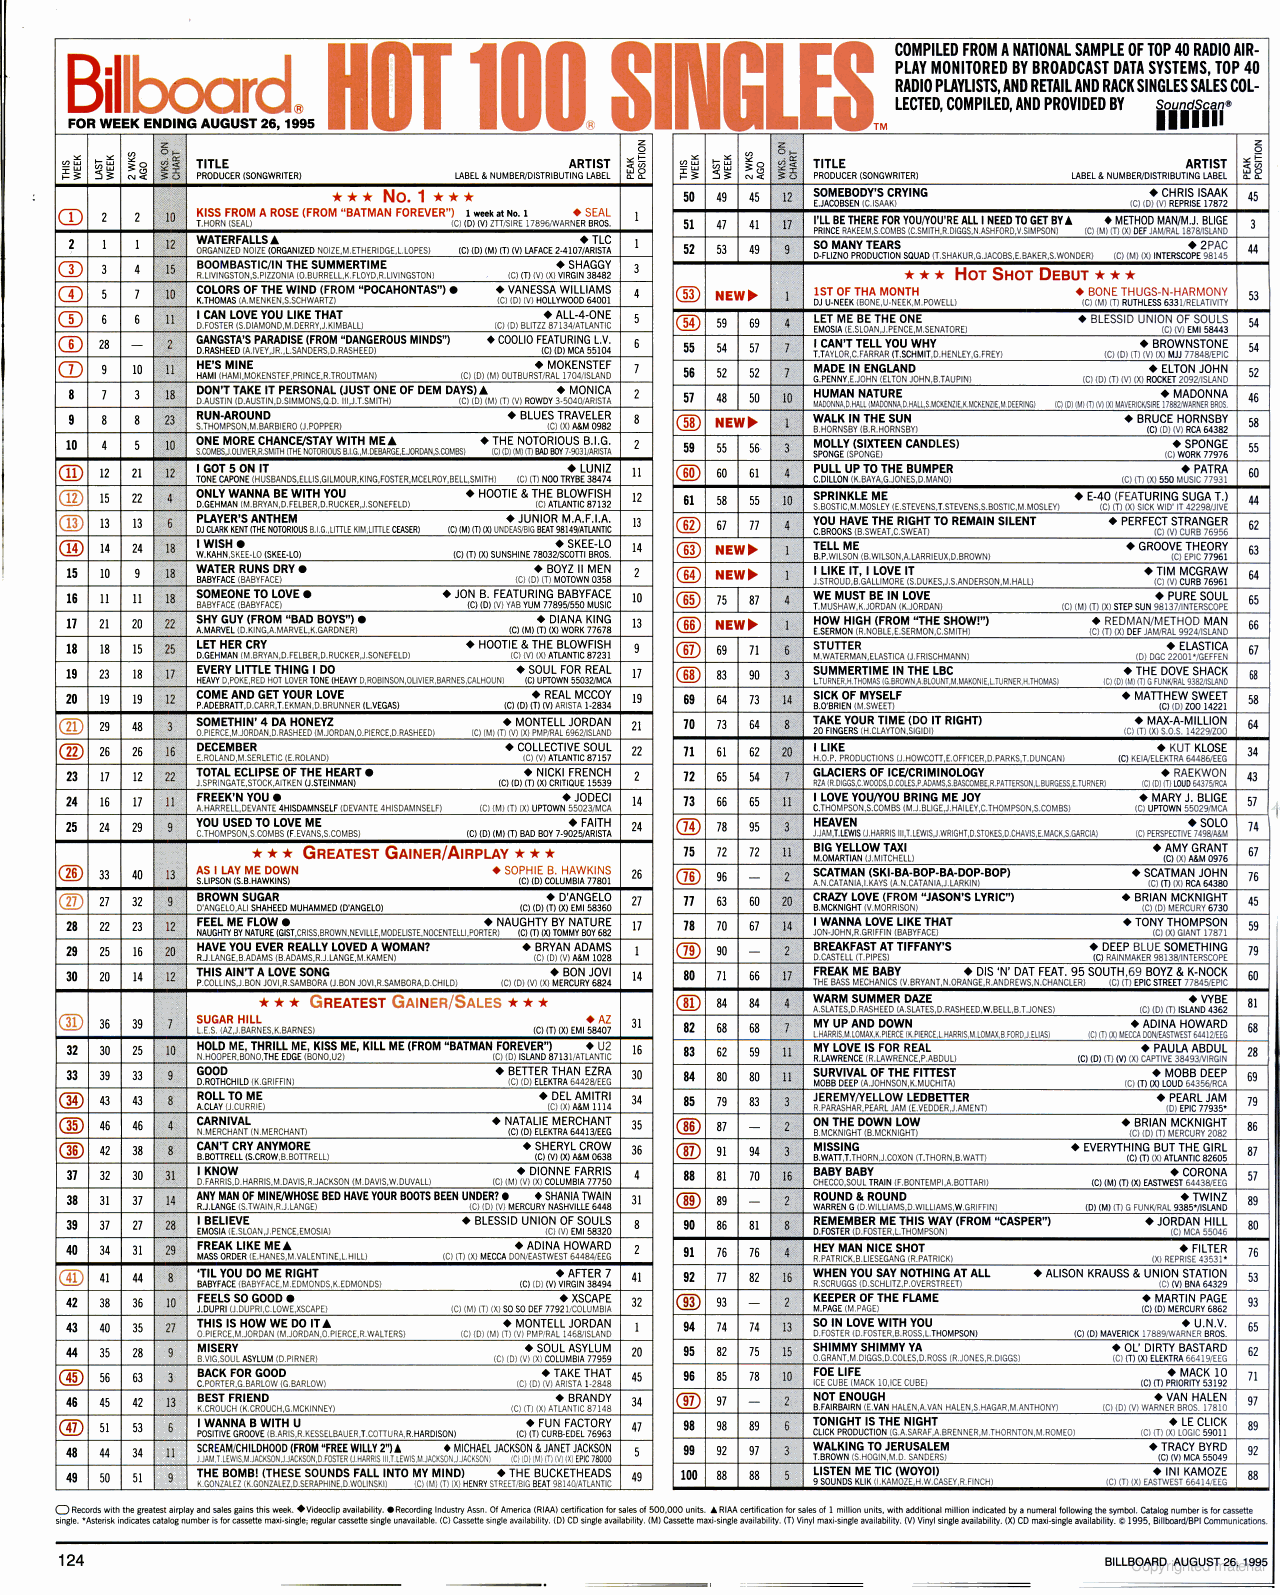 1995 Charts